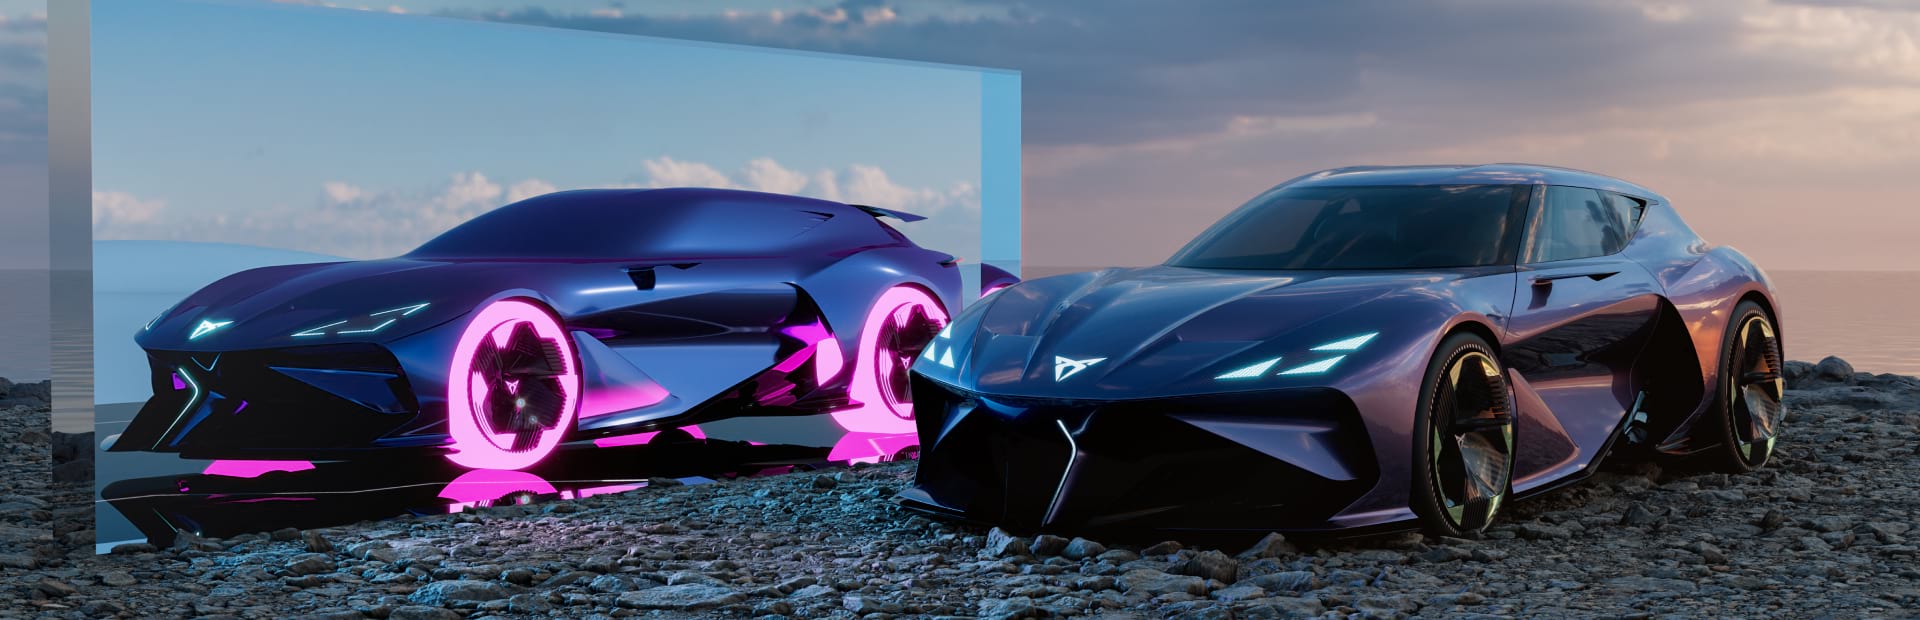 CUPRA przedstawia DarkRebel, swój wirtualny samochód sportowy